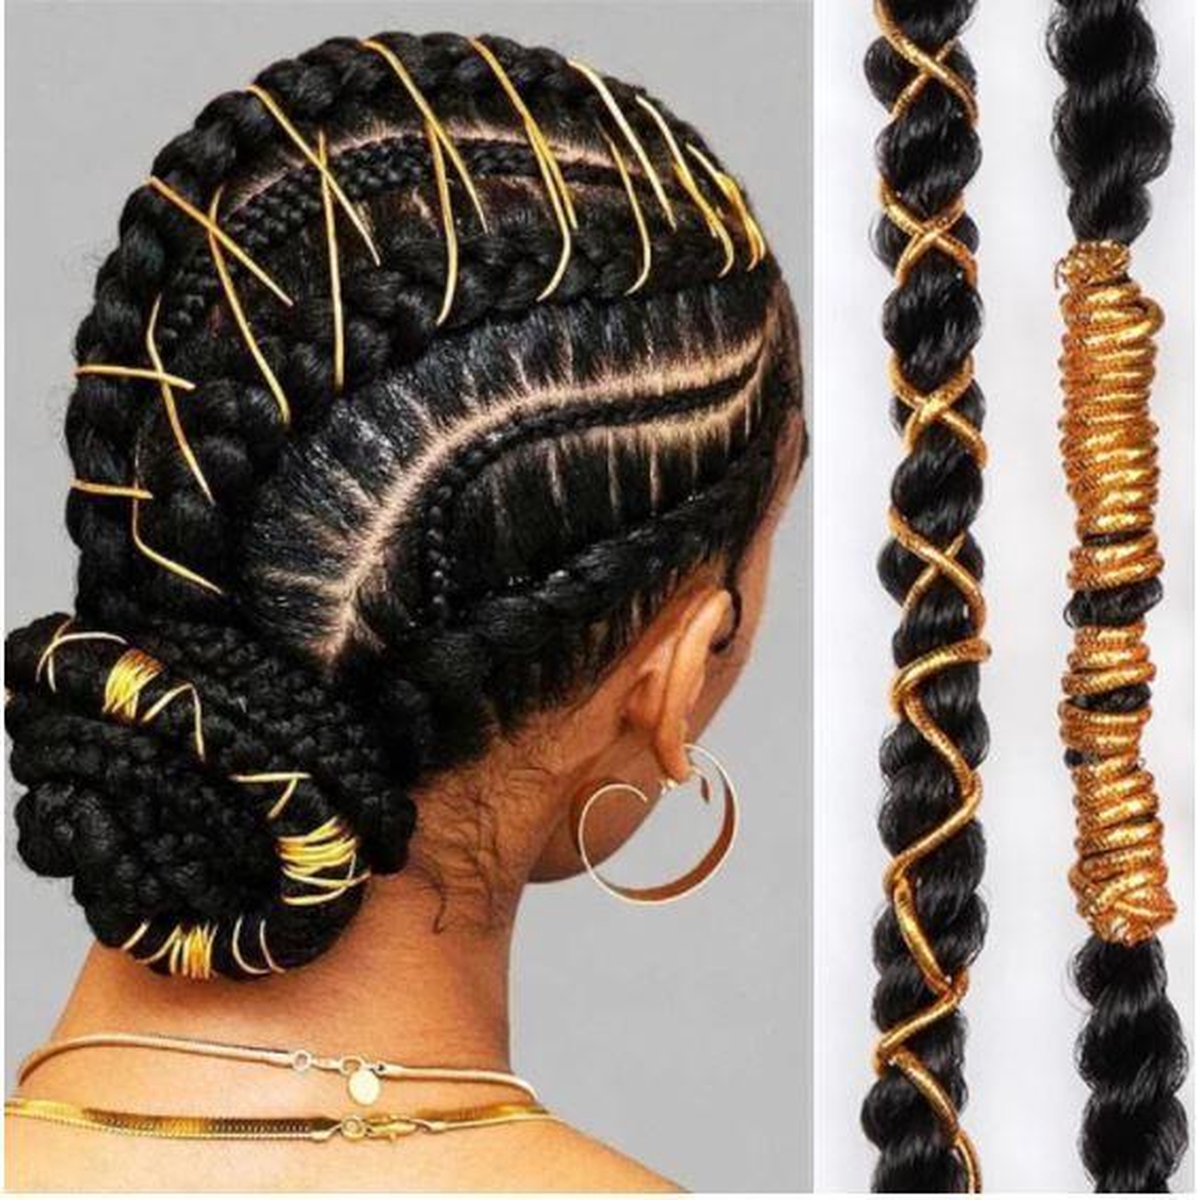 Haar touw - haar kralen - hair beads - beads for braids - dreadlocks - goudkleurig 6 stuks